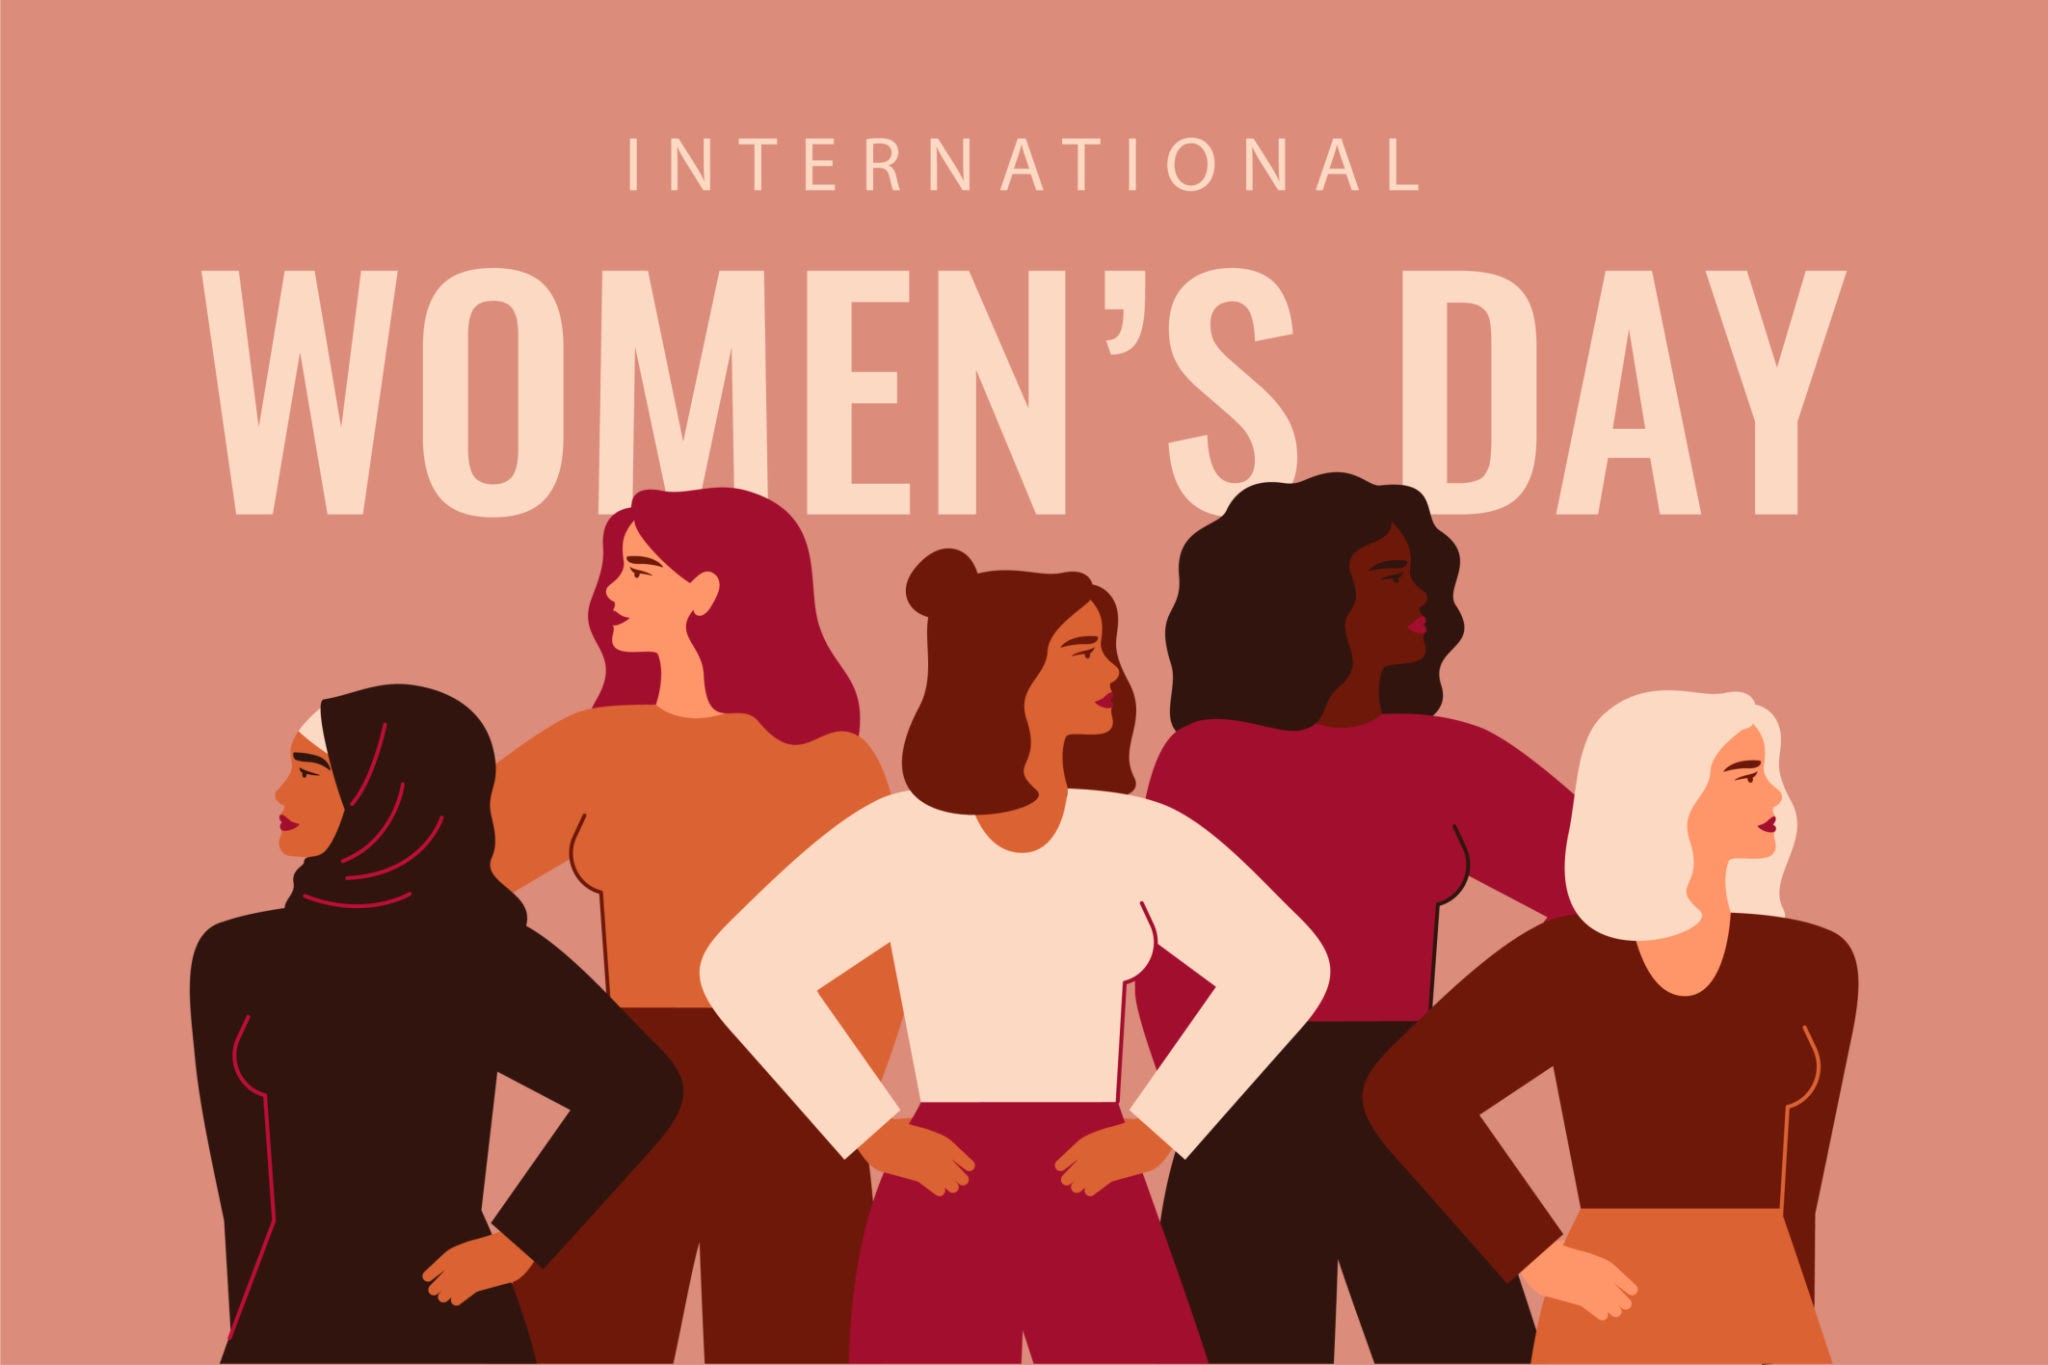 sot 8 marsi dita ndërkombëtare e gruas historia dhe domethënia